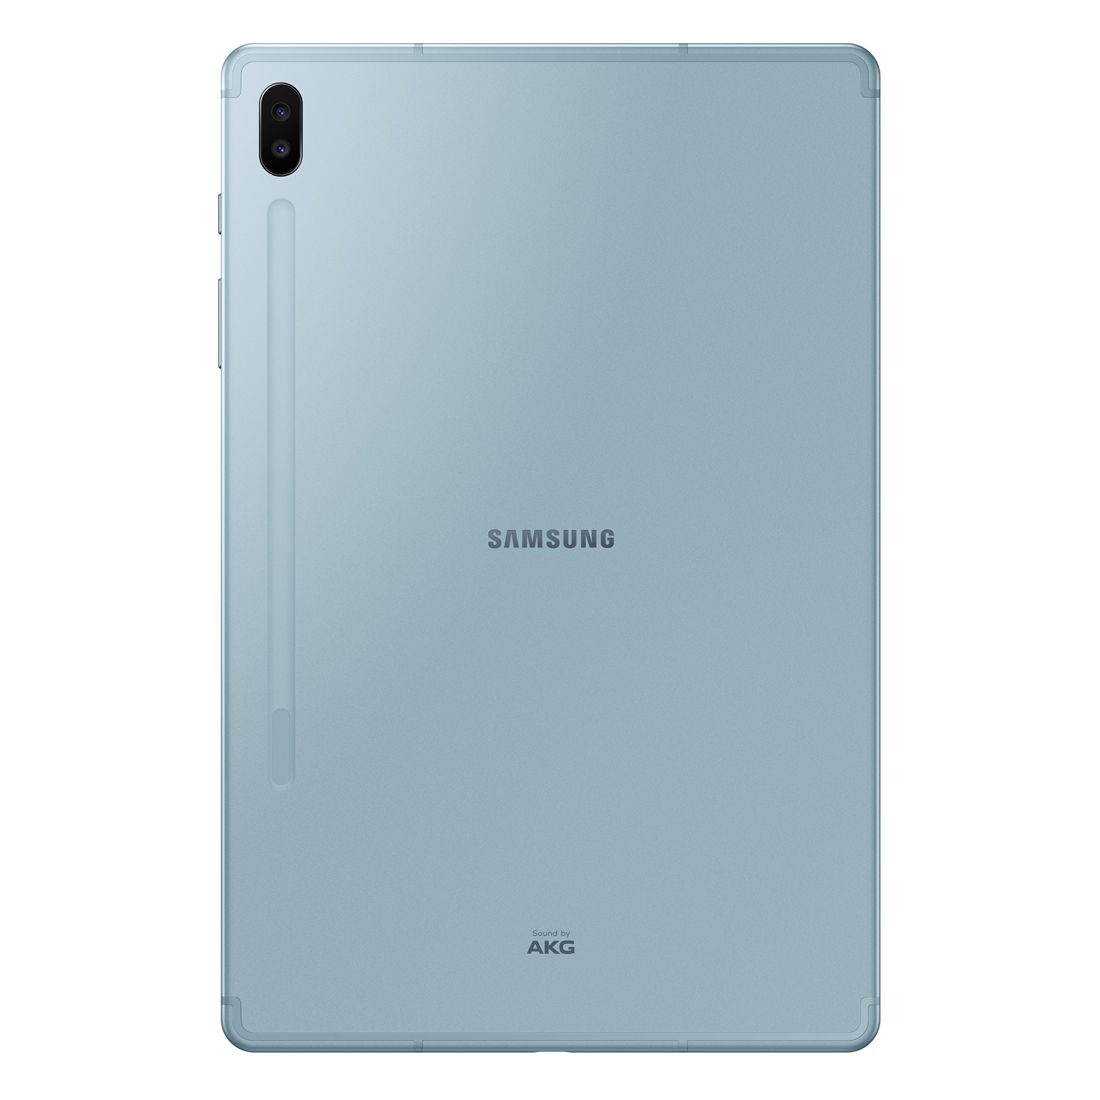 Samsung Galaxy Tab S6 (256GB, Wi-Fi + 4G) - Blue